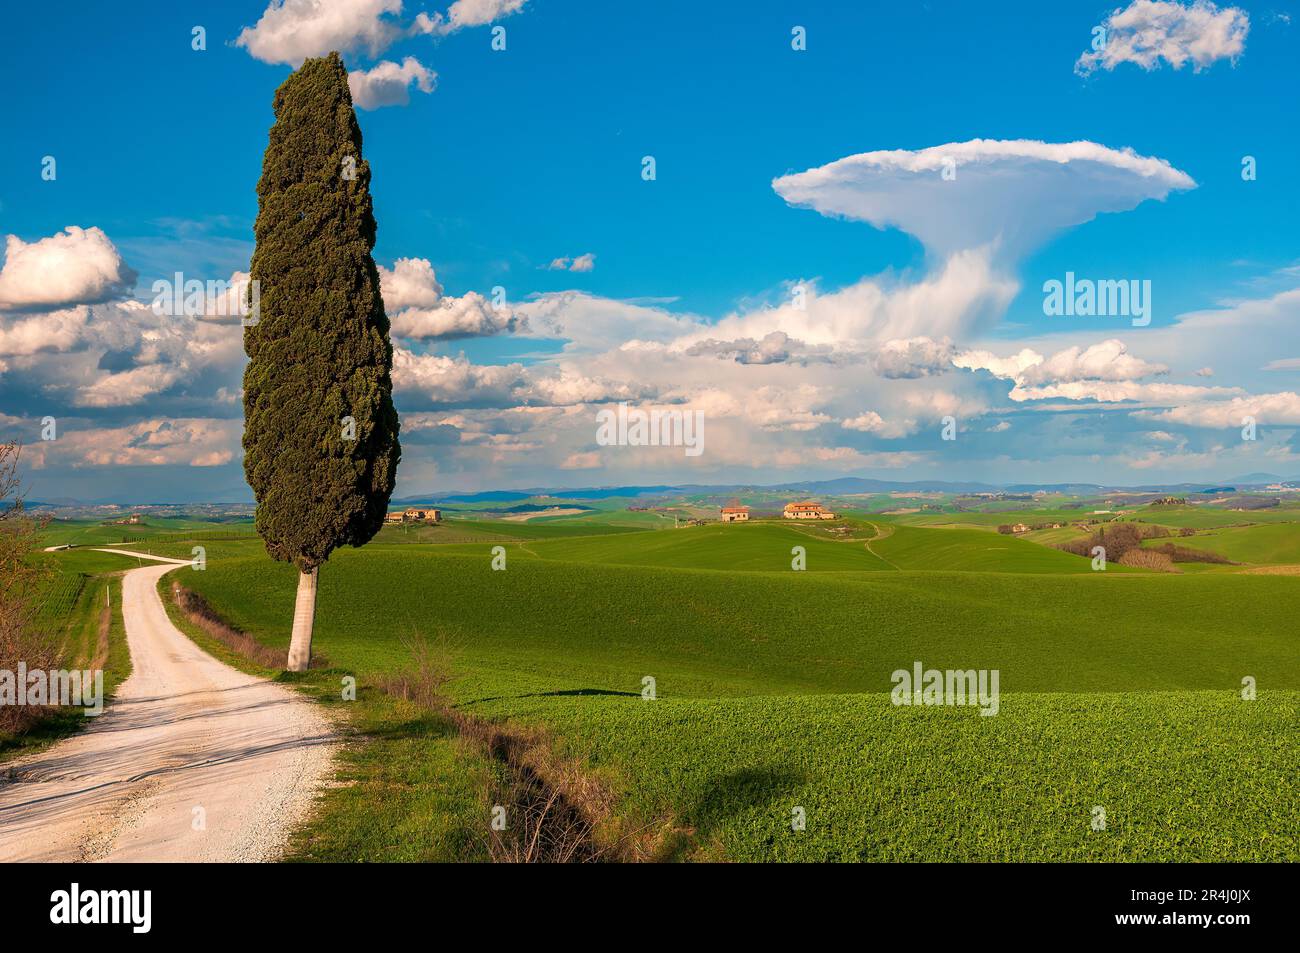 Paysage rural pittoresque avec cyprès de Sienne, Toscane, Italie Banque D'Images